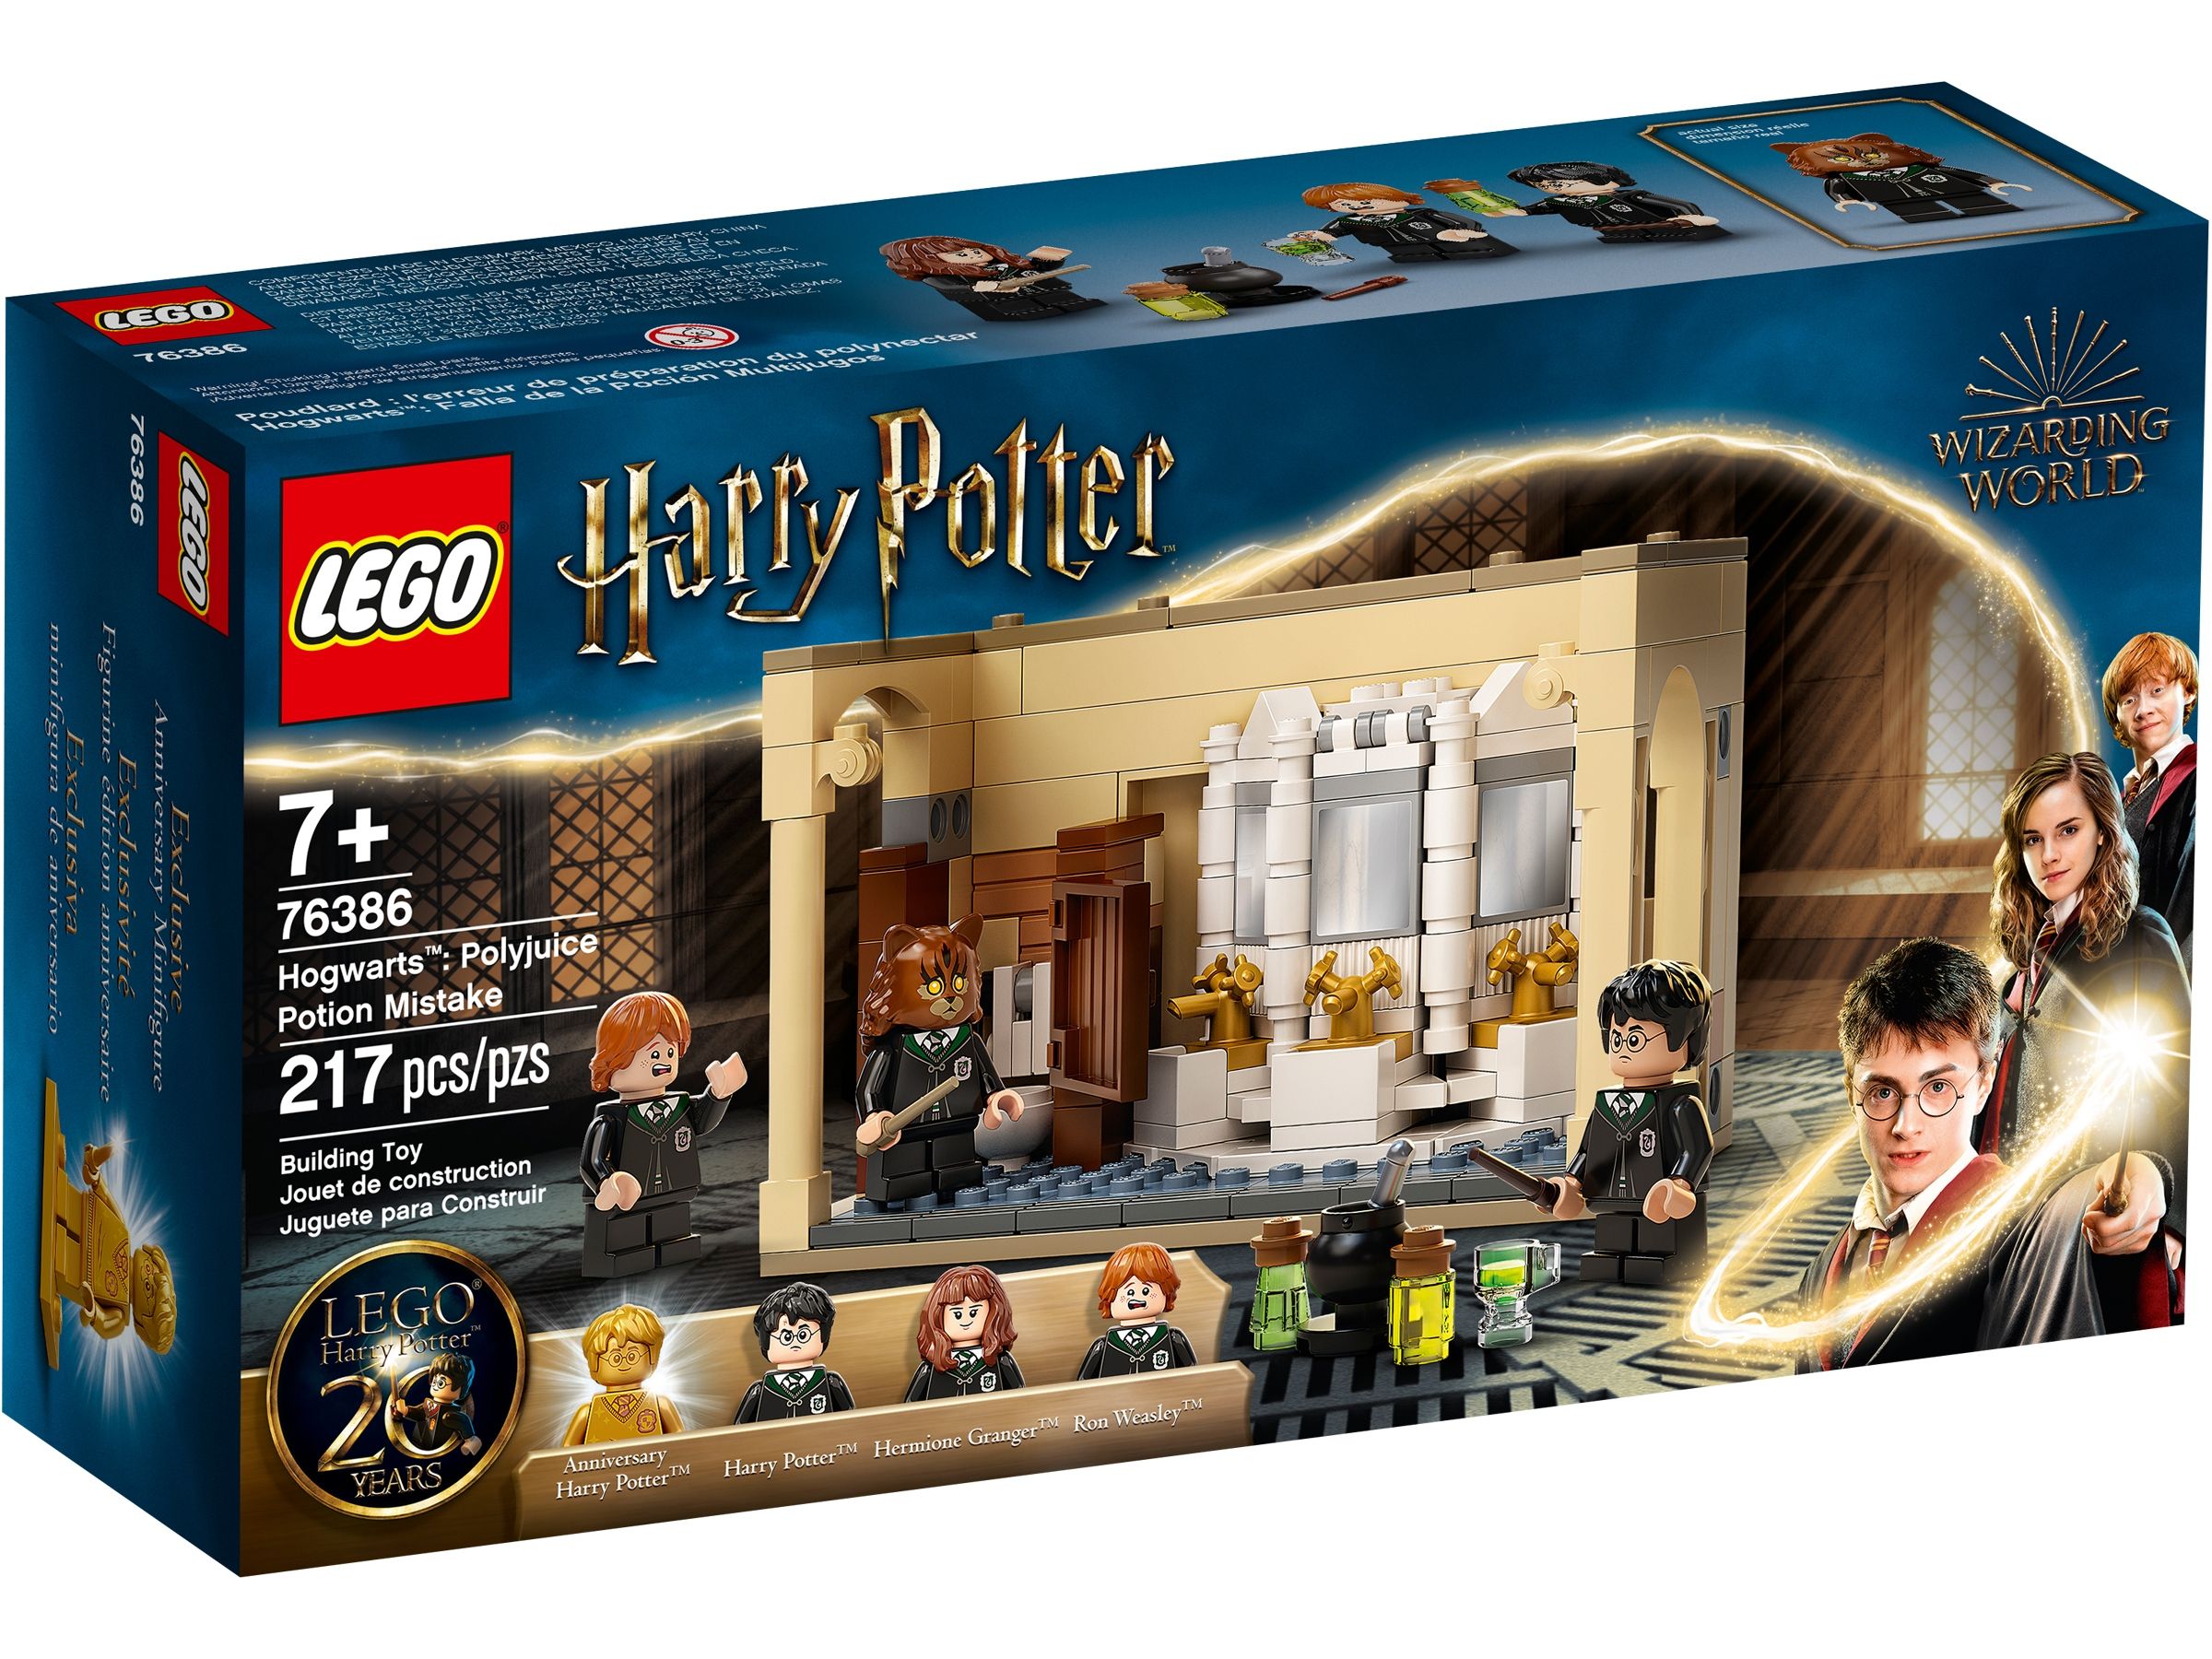 LEGO Harry Potter 76386 Hogwarts™: Misslungener Vielsafttrank LEGO_76386_alt1.jpg